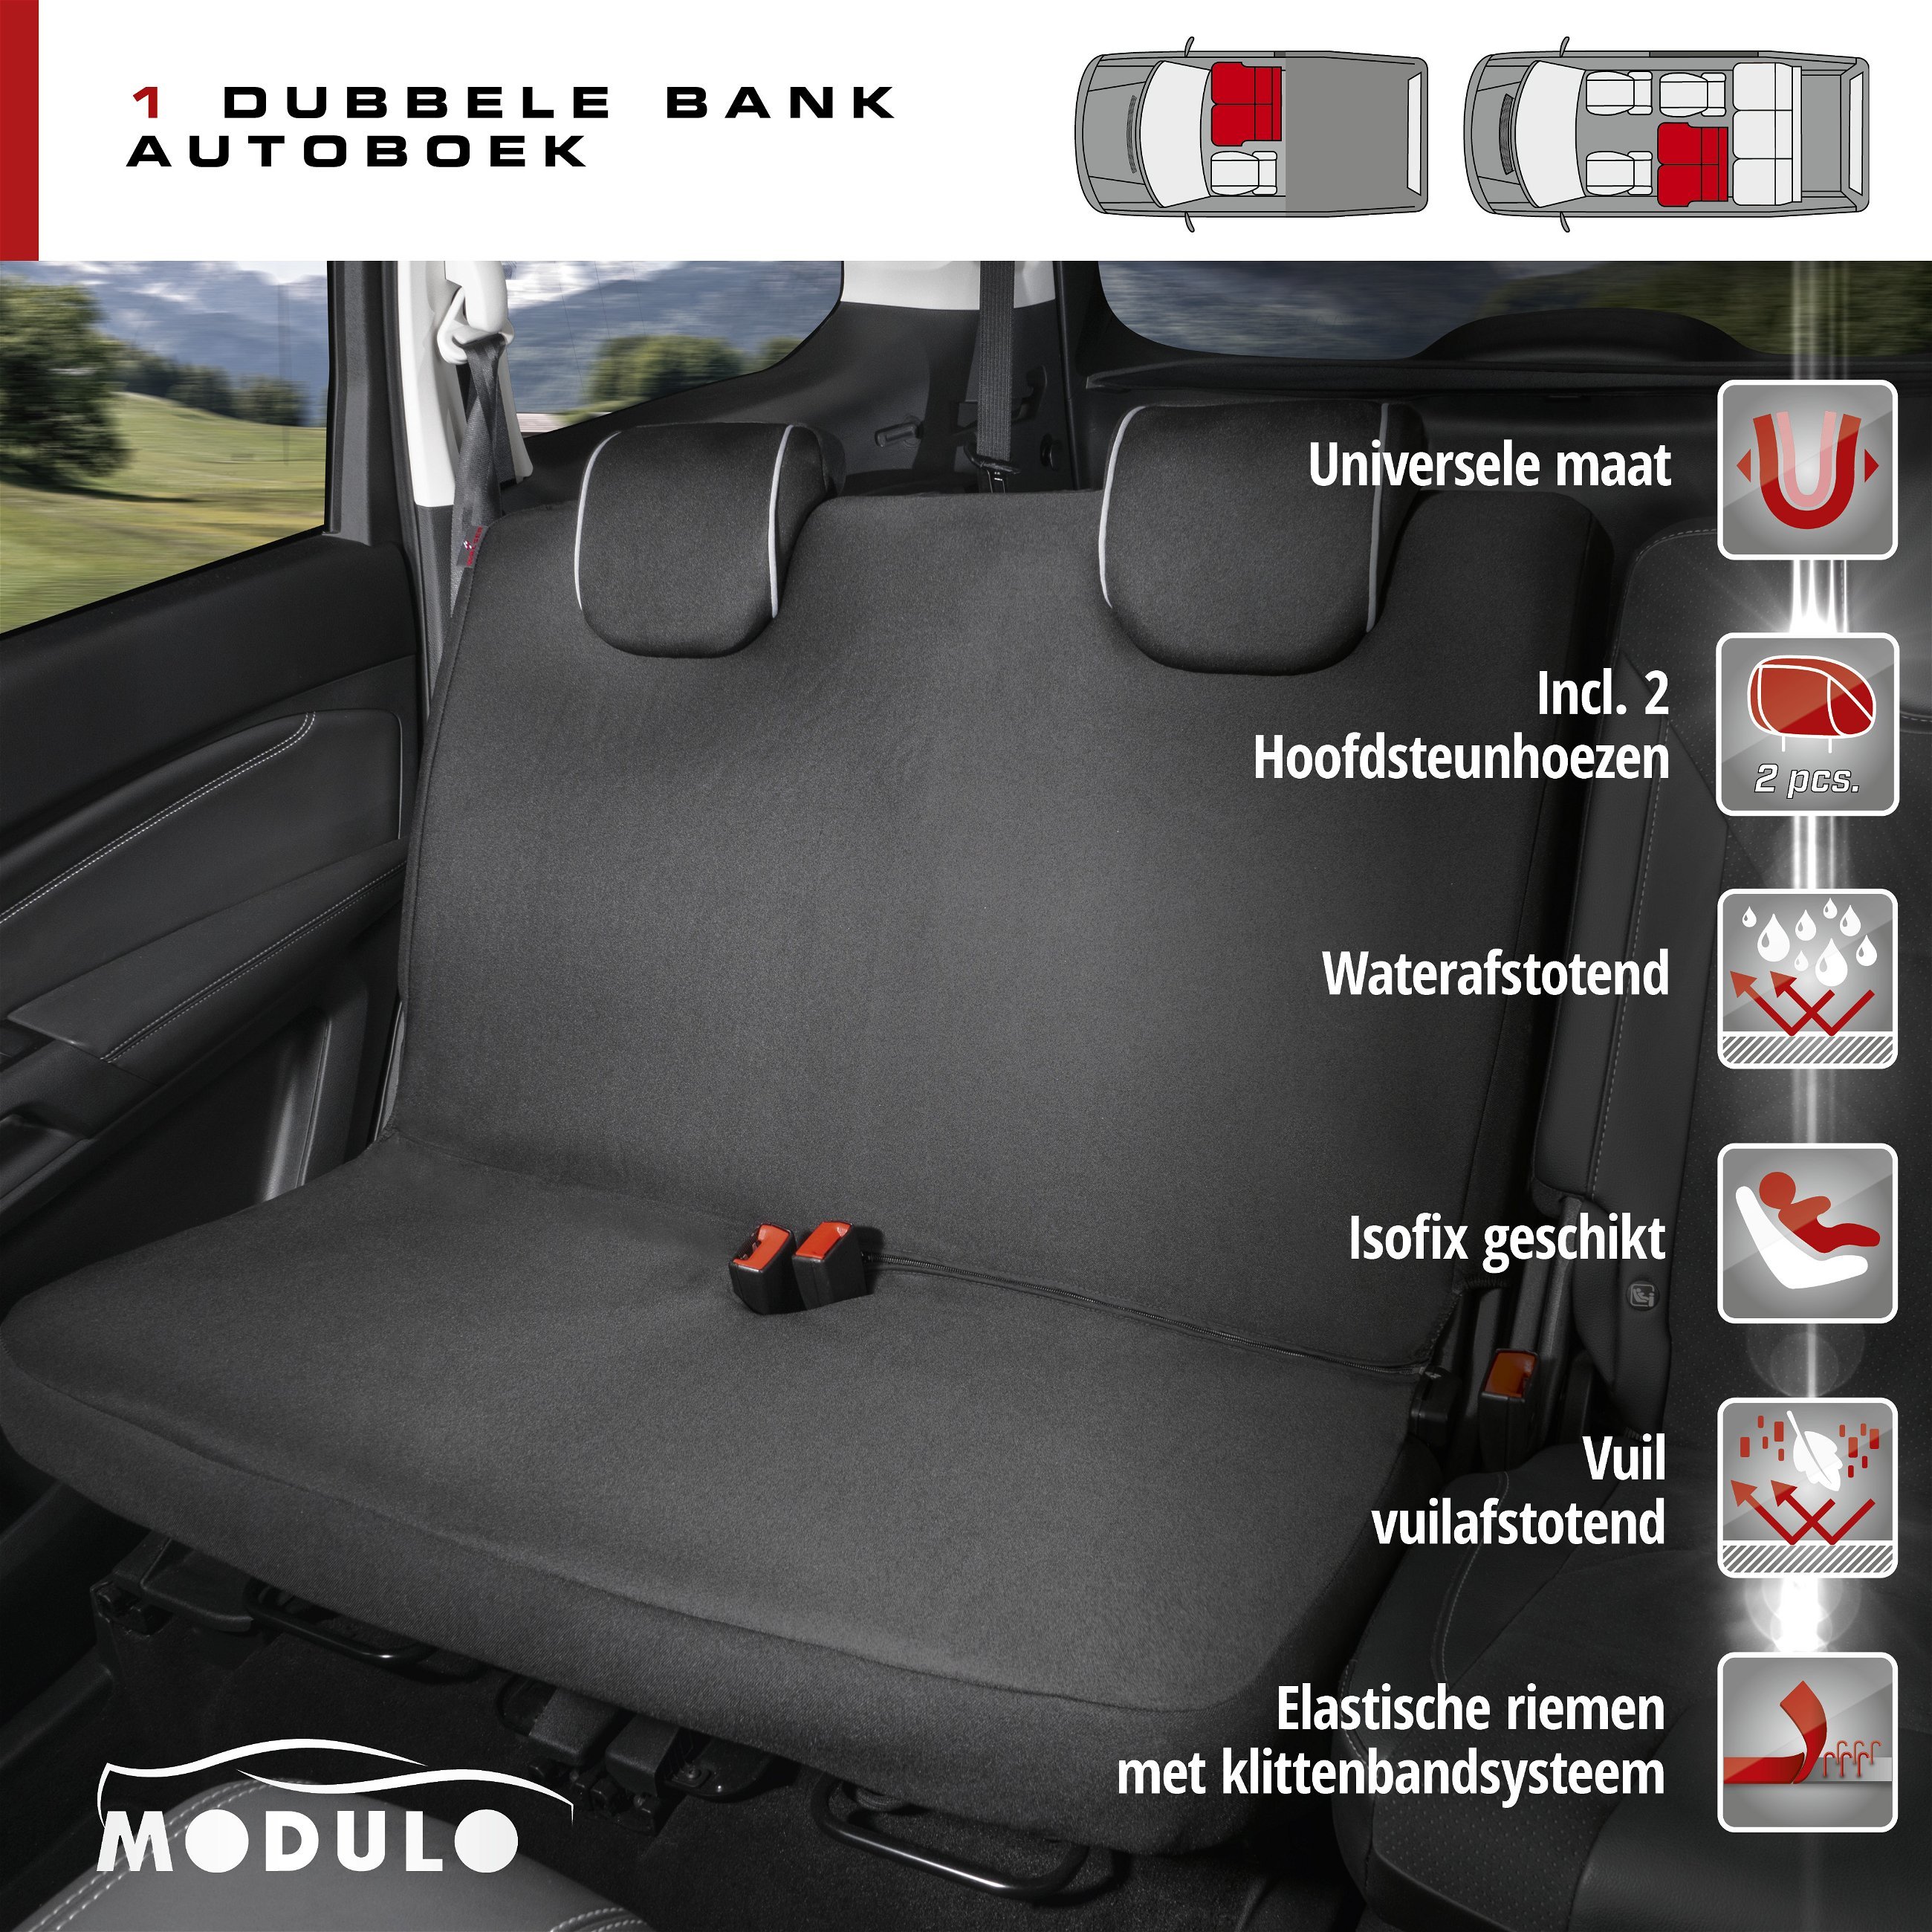 Auto stoelbeschermer Modulo voor Doppelbank zwart universeel passende stoelbeschermer